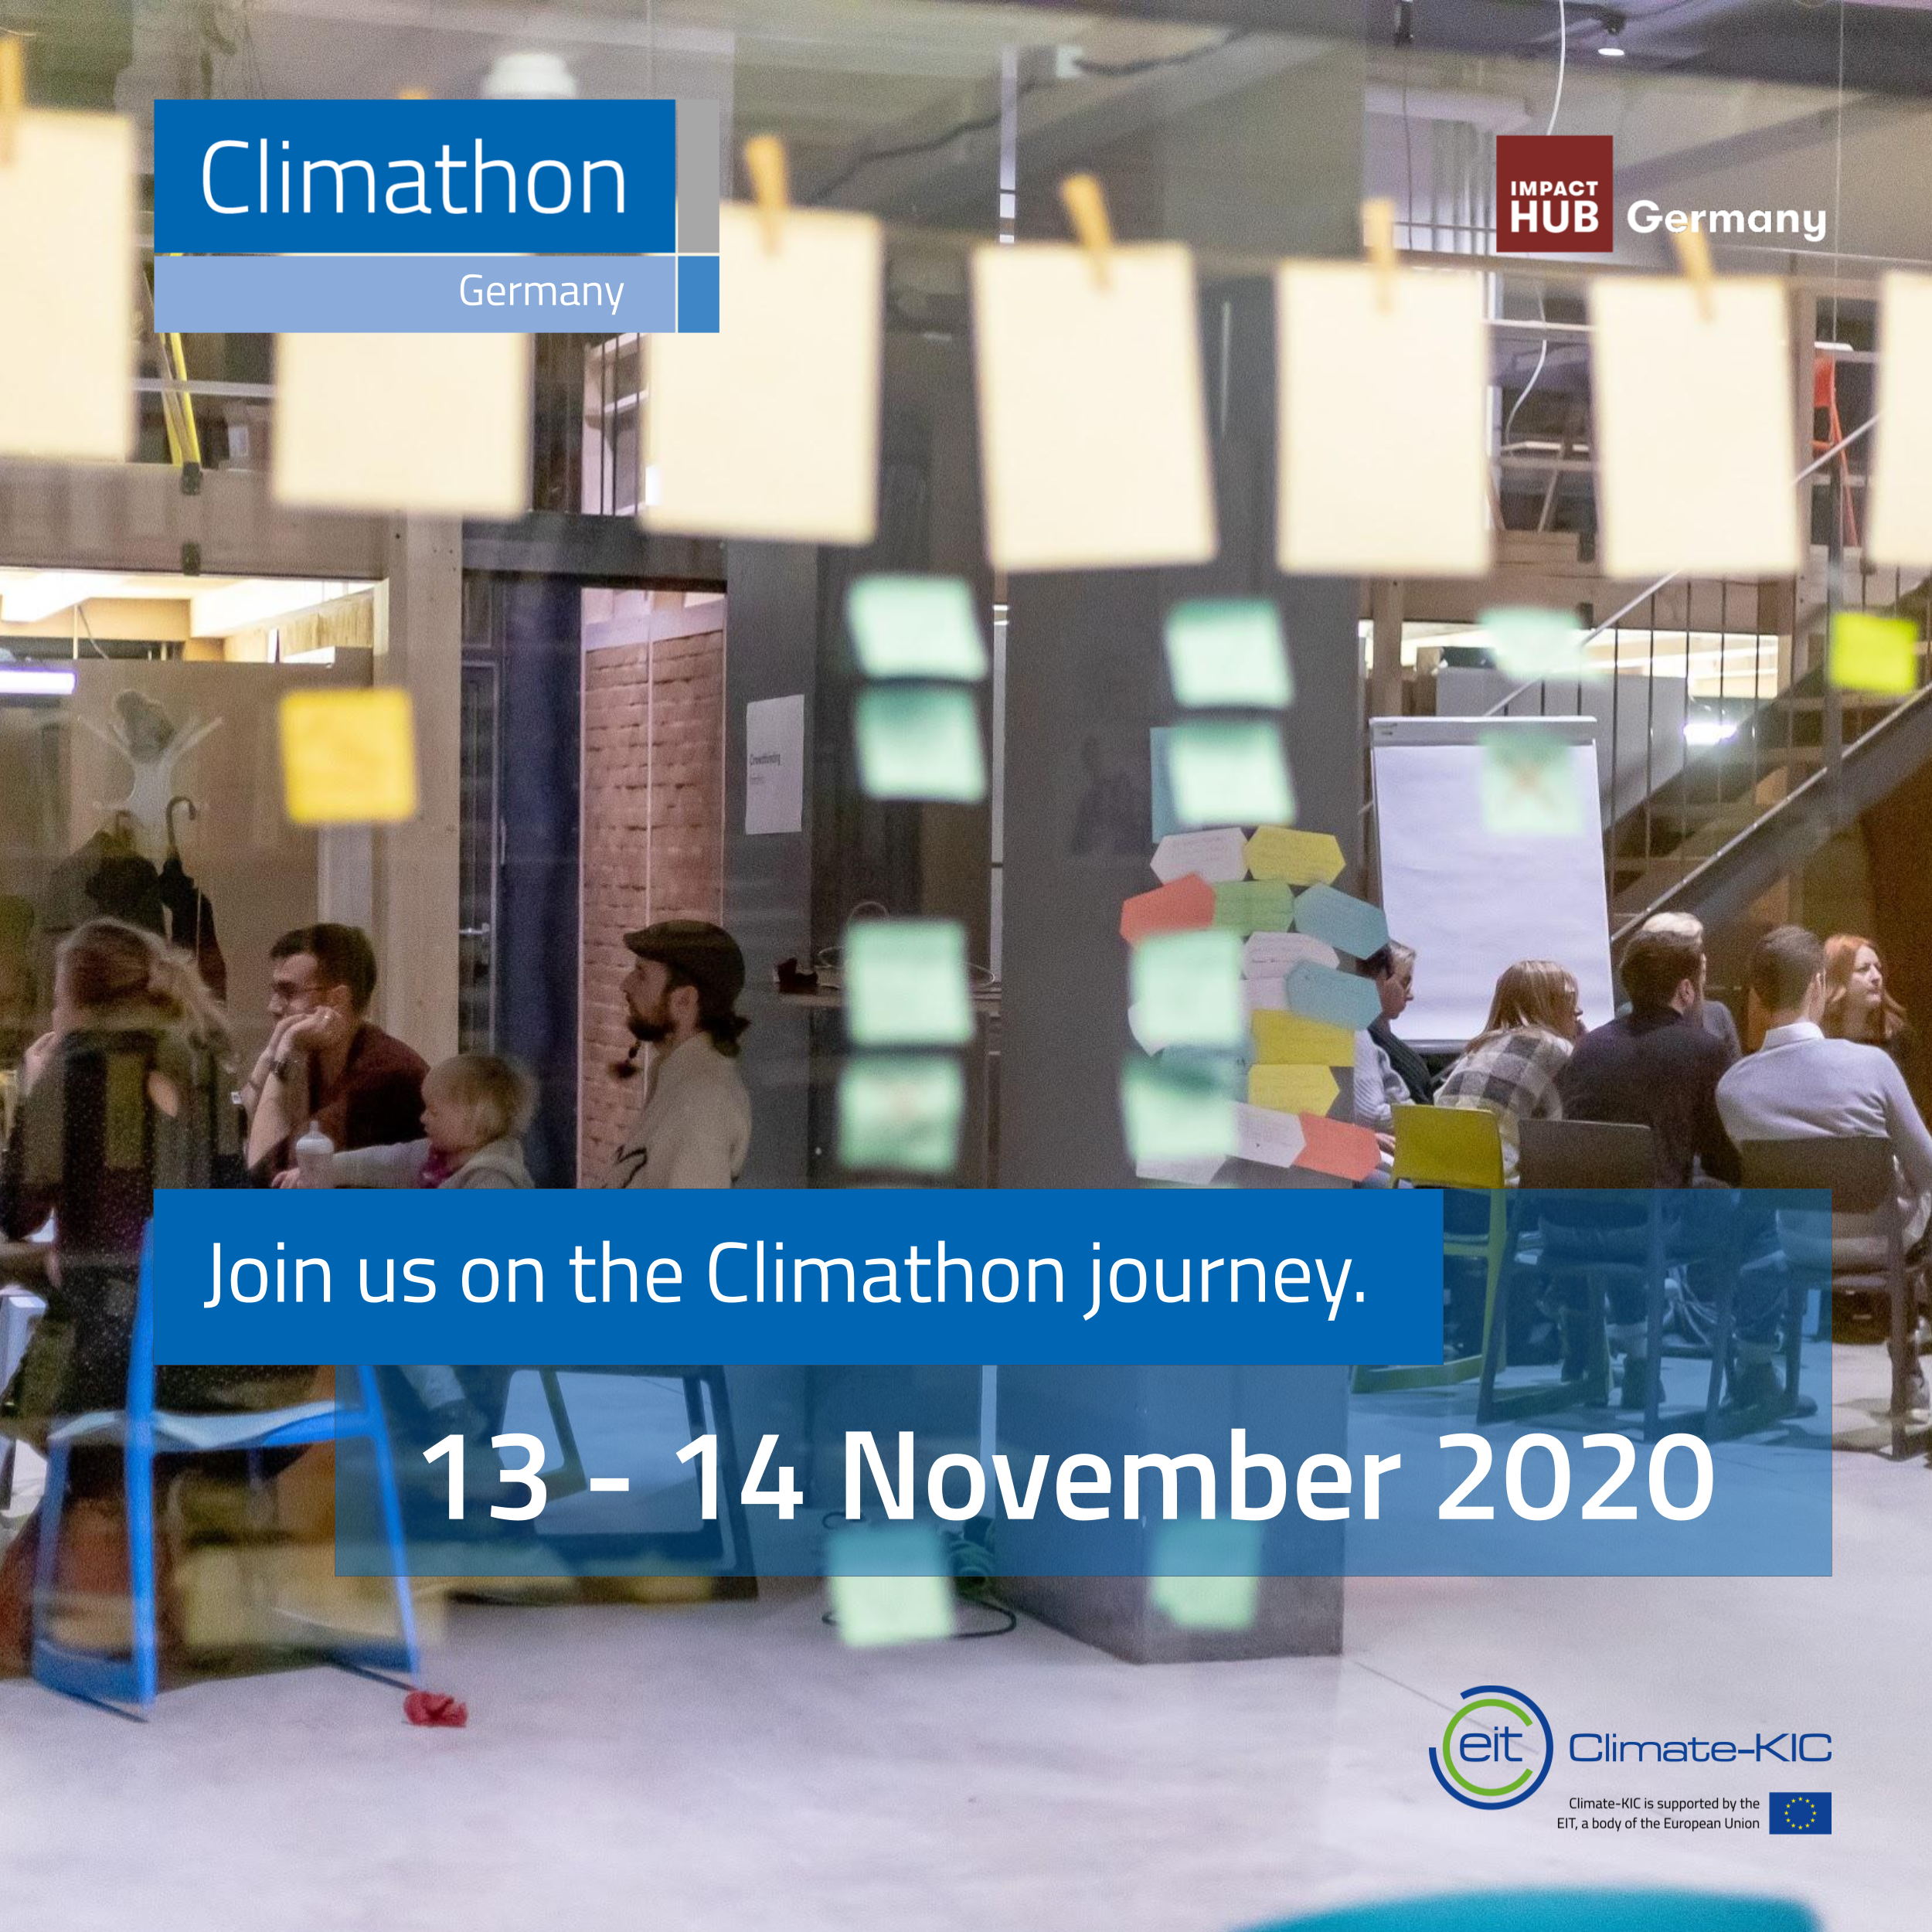 Foto von zusammensitzenden Menschen, post its auf einer Glaswand im Vordergrund, Aufschrift: Join us on the Climathon journey. 13.-14. November 2020